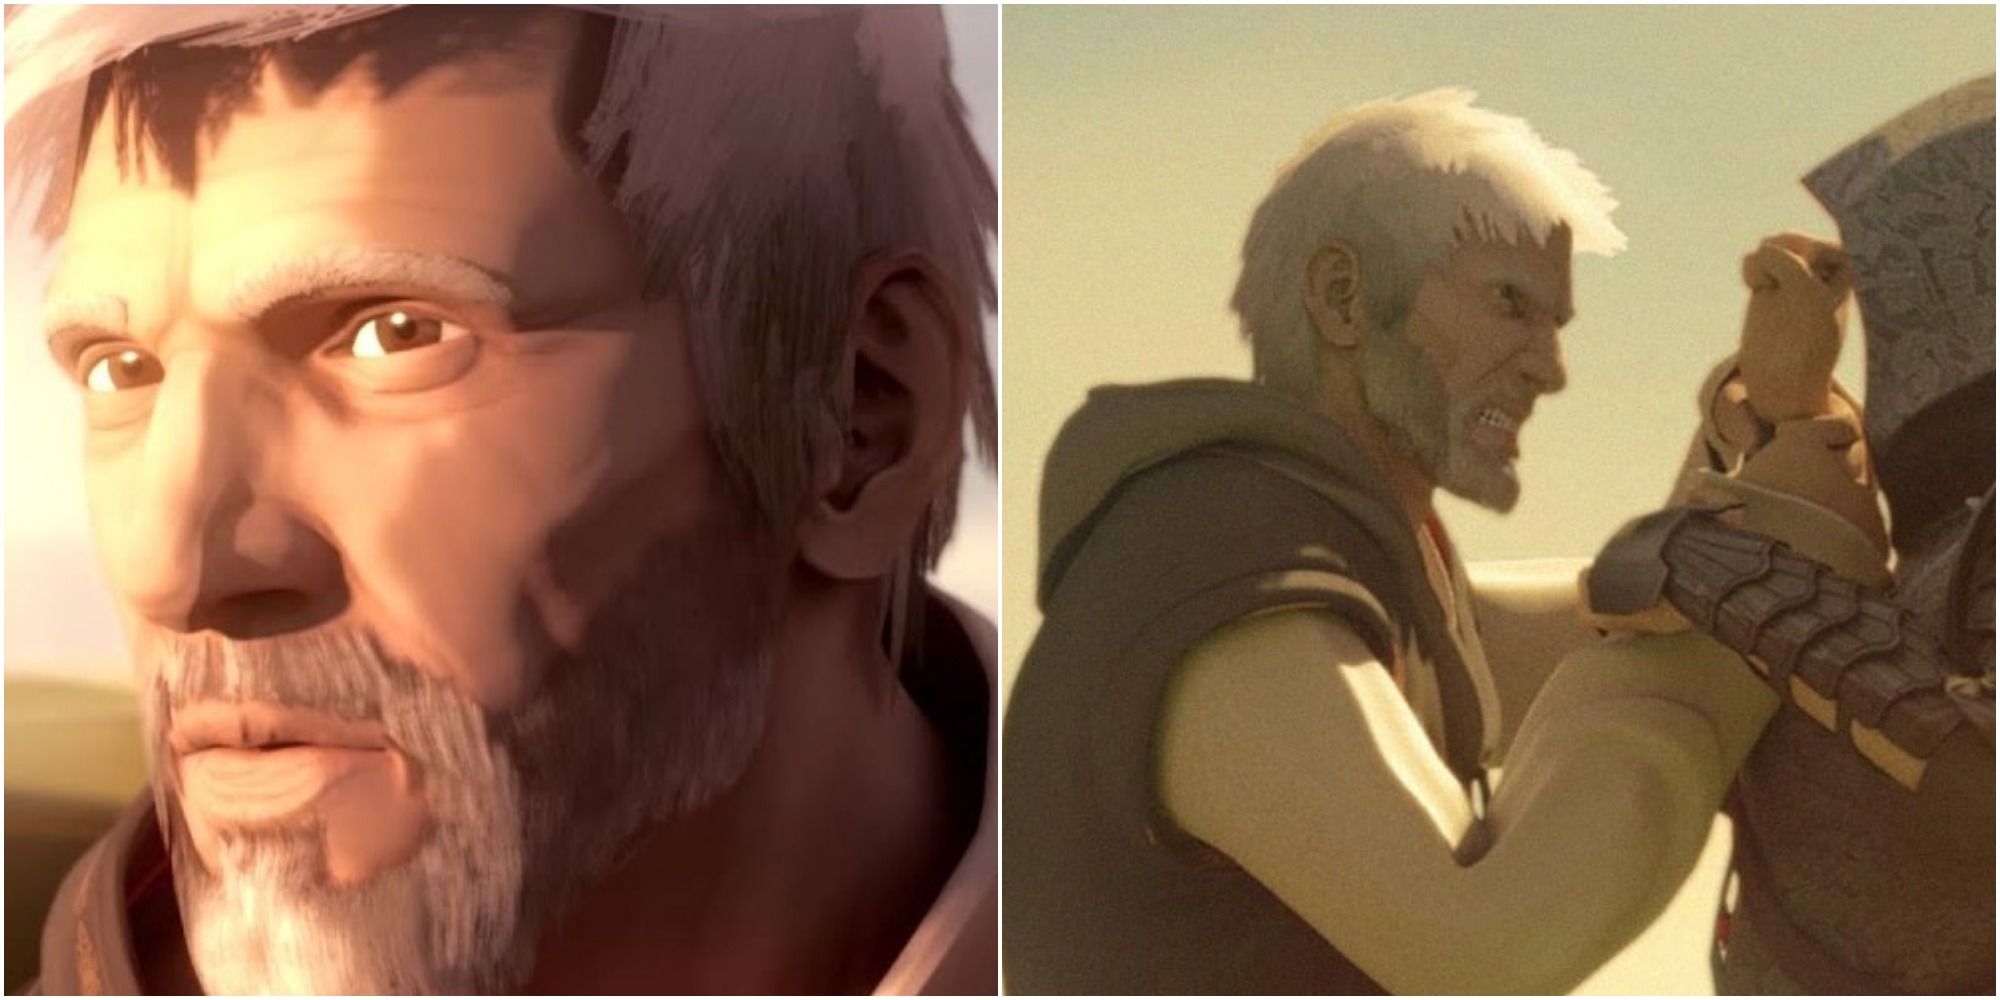 художественное изображение, показывающее постаревшего и вышедшего на пенсию Эцио из Assasin's Creed